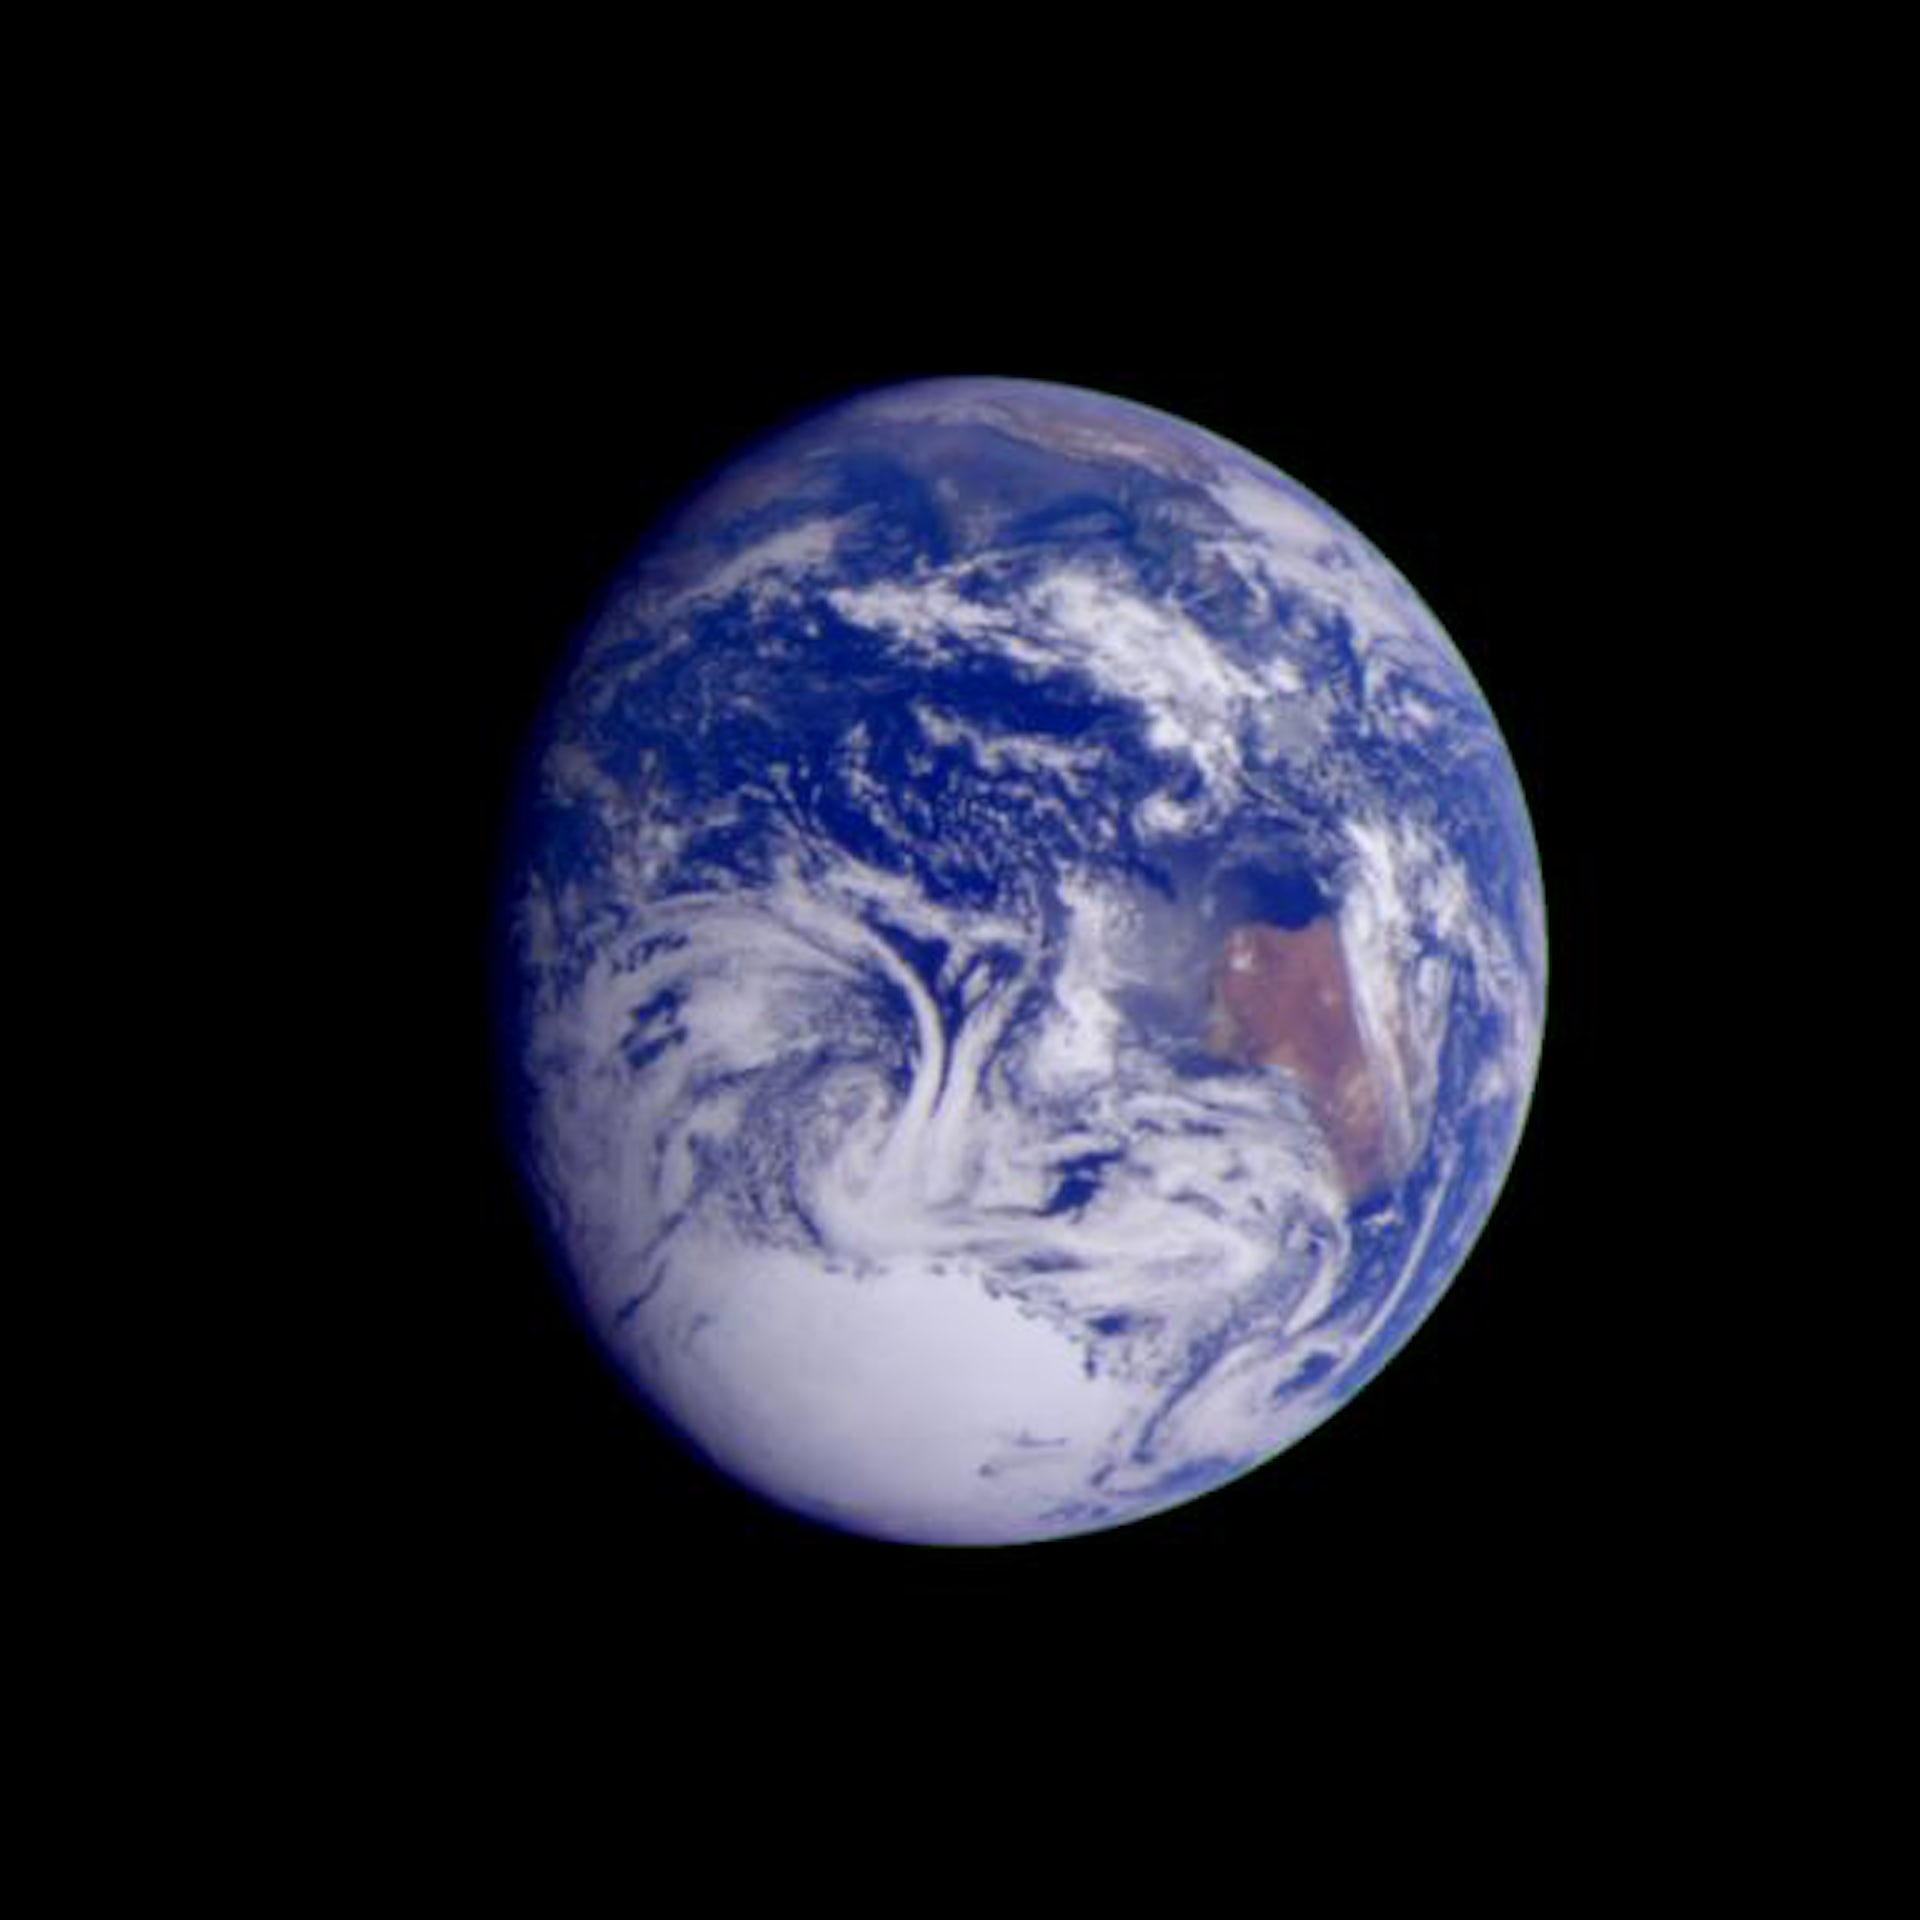 伽利略号宇宙飞船在2.4万公里外拍摄的图像。